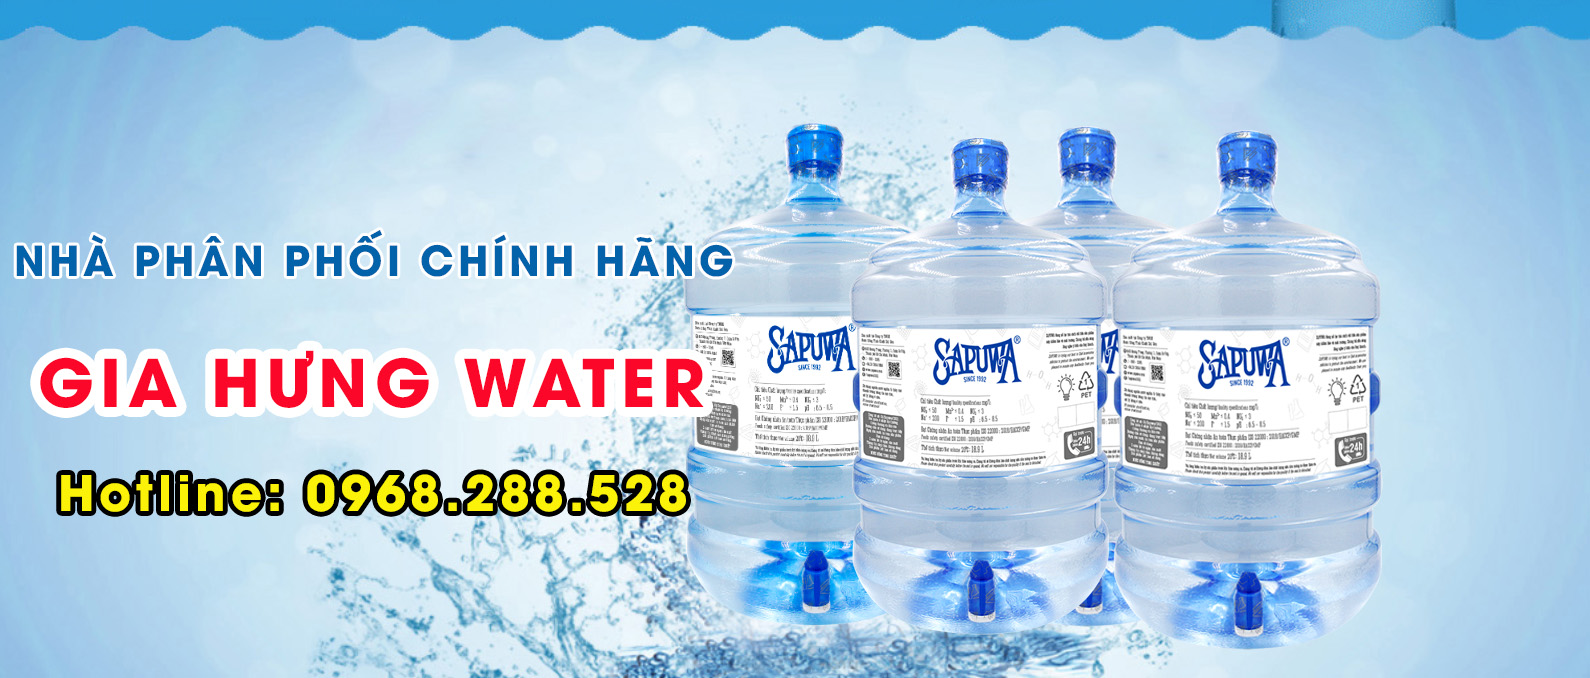 Đại lý nước uống Sapuwa chính hãng - Gia Hưng Water